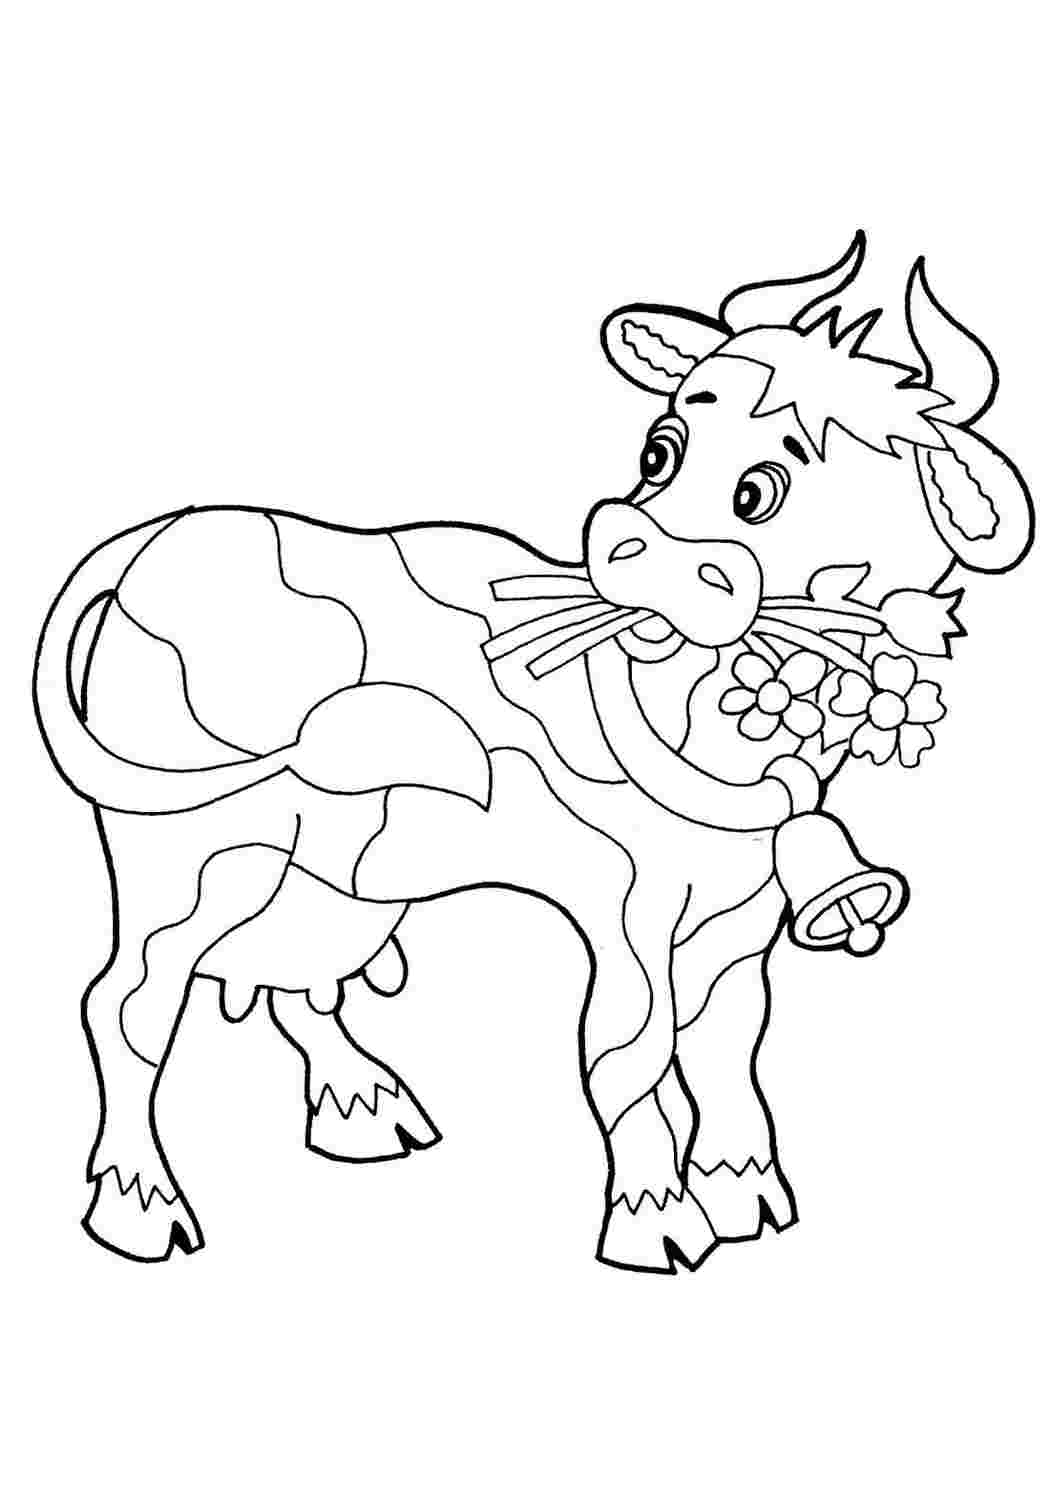 Распечатать коровку раскраску. Раскраска корова. Корова раскраска для детей. Теленок раскраска для детей. Раскраска домашние животные.